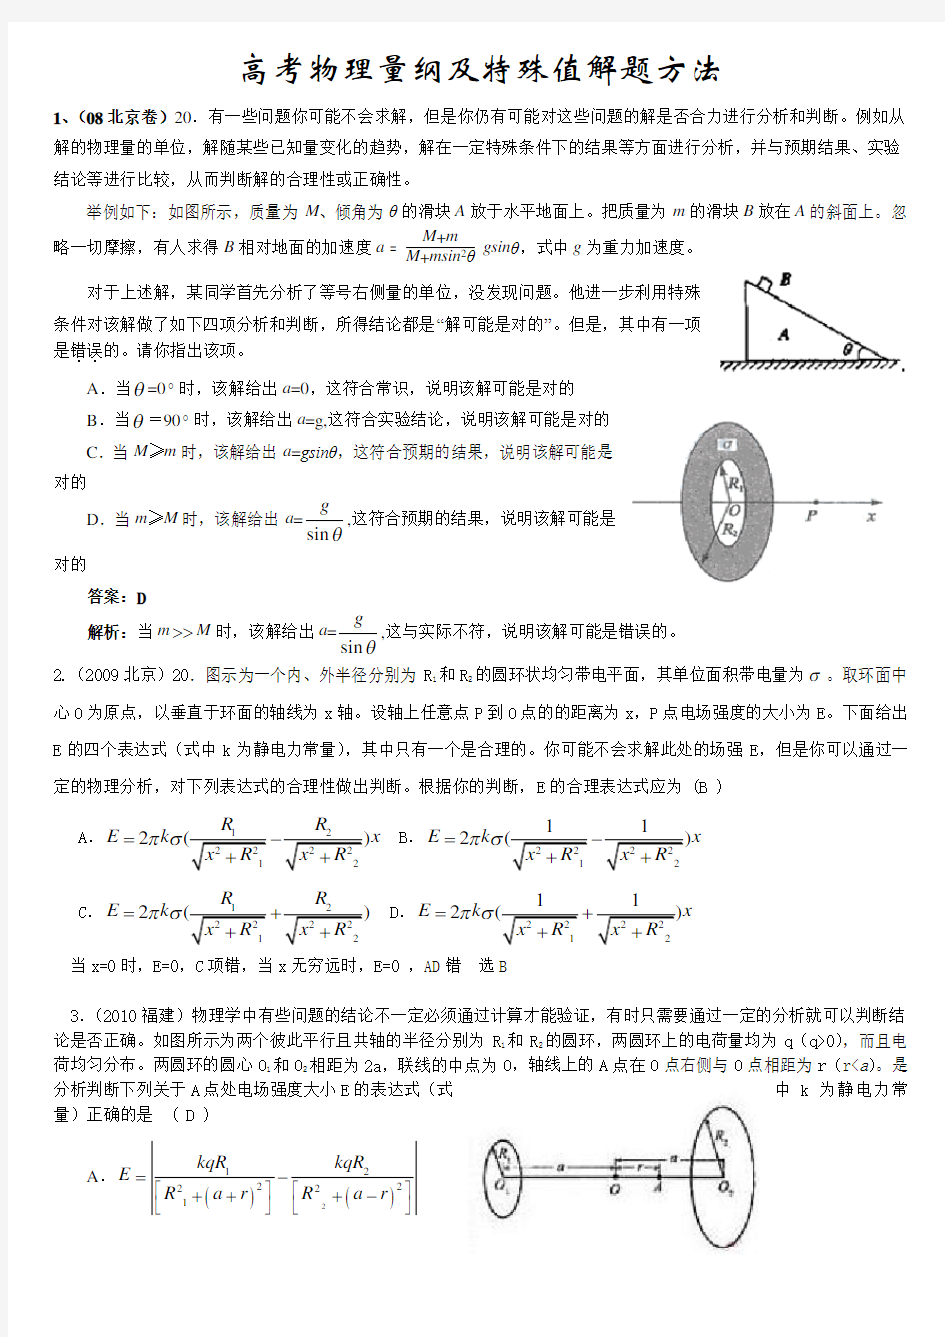 高考物理量纲及特殊值解题方法20题